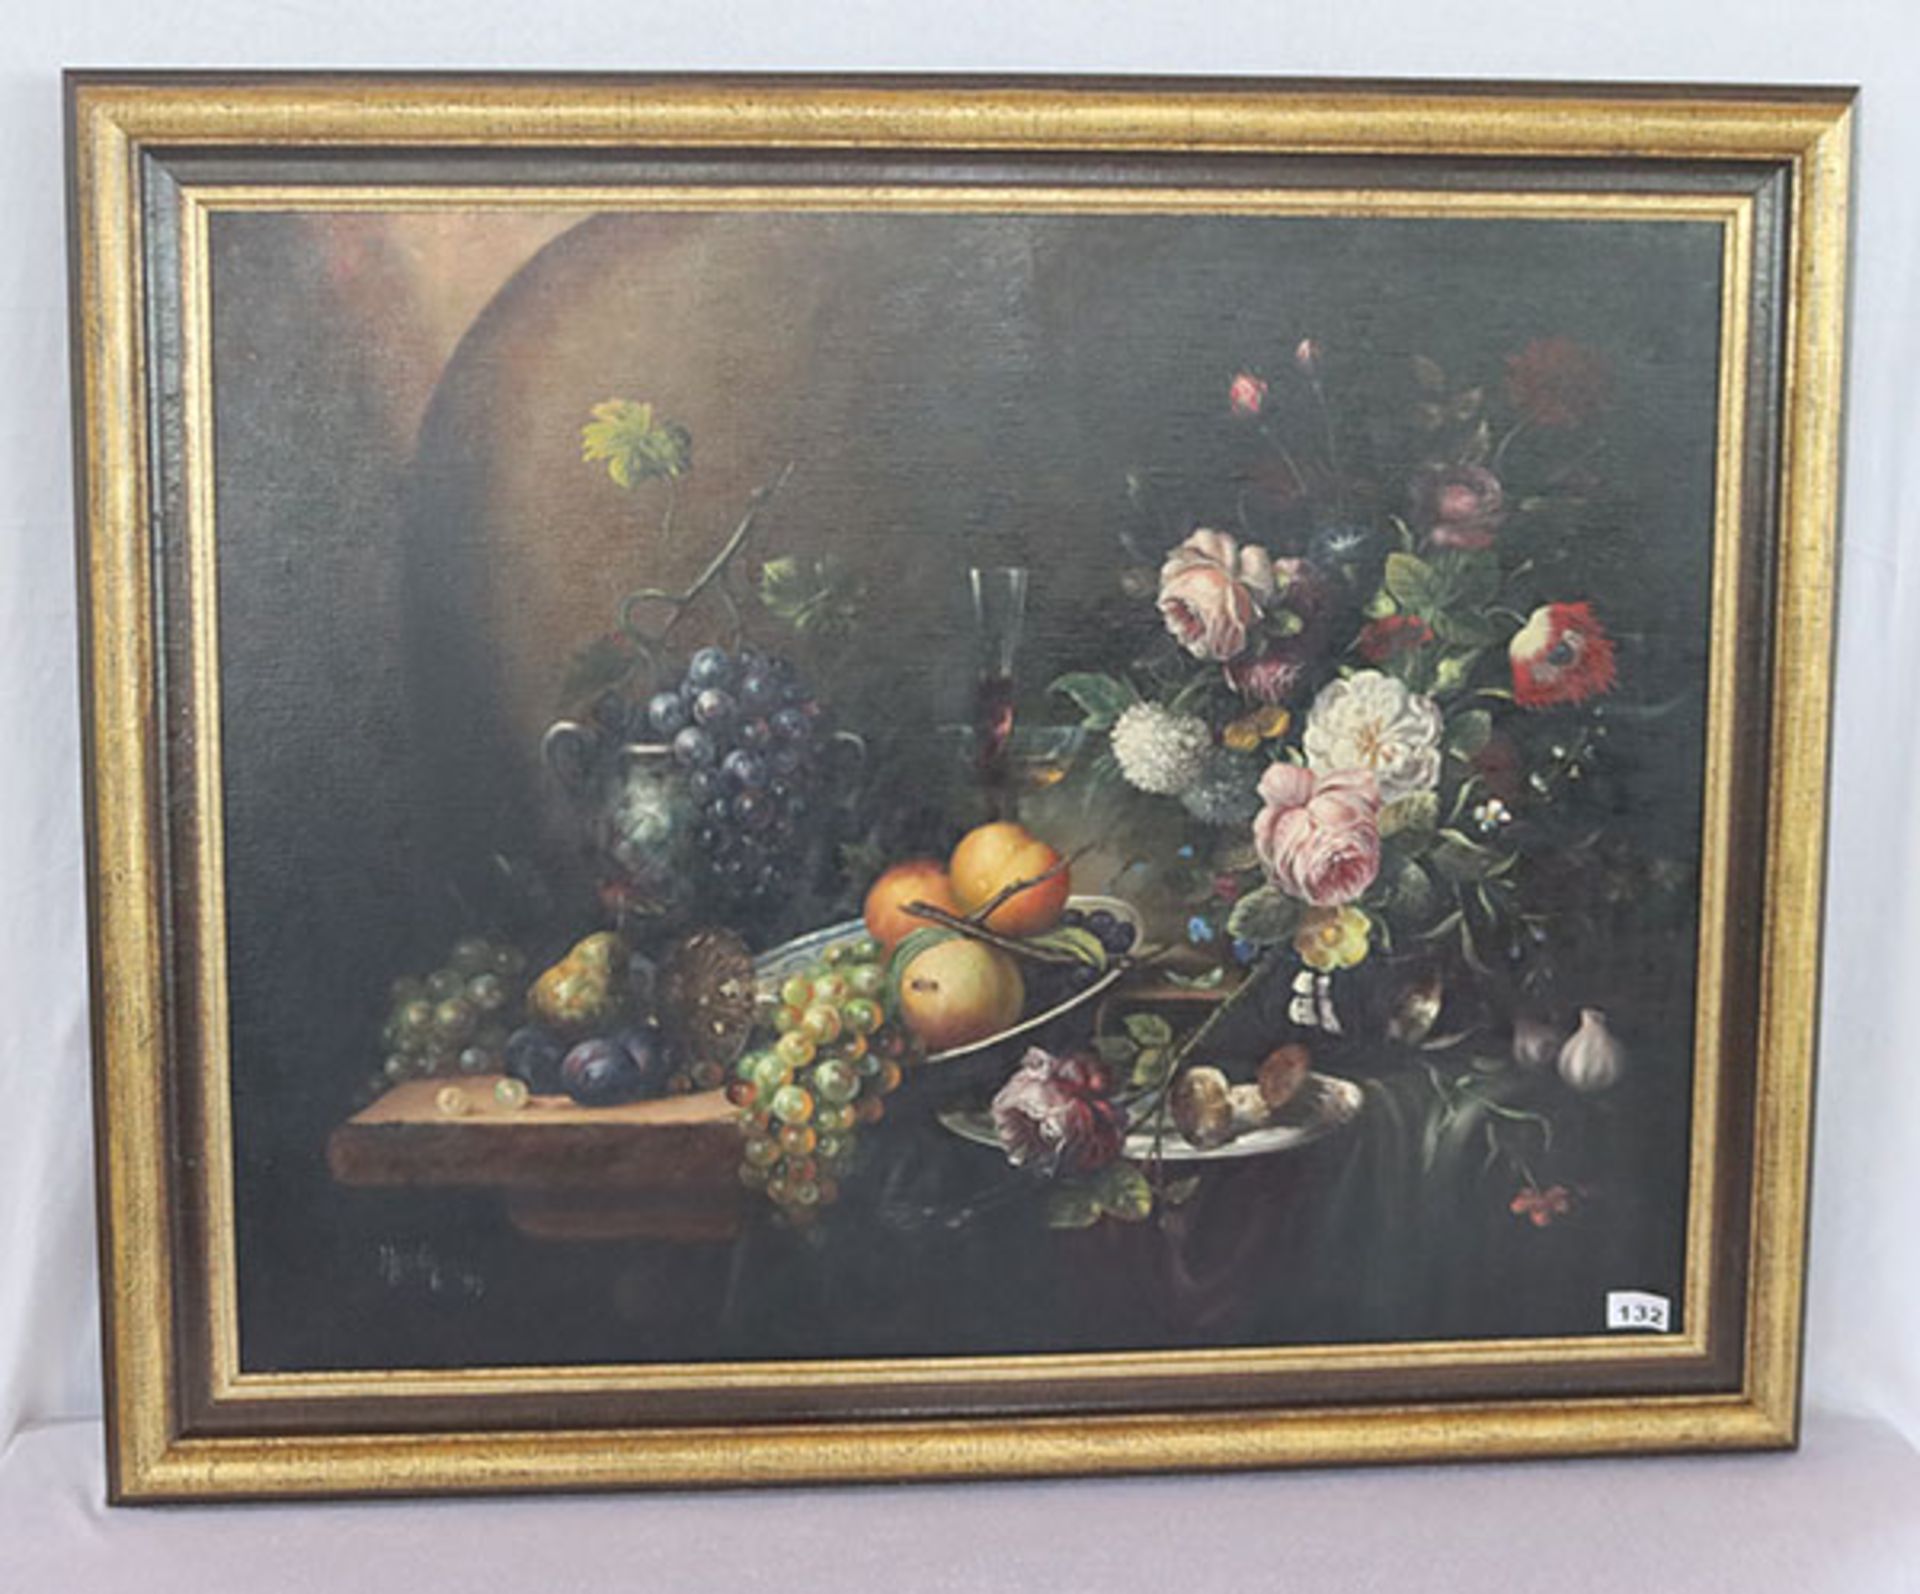 Gemälde ÖL/LW 'Blumen- und Früchtestillleben', signiert Herdin, datiert 91, Radtke, * 1943 Korsze/